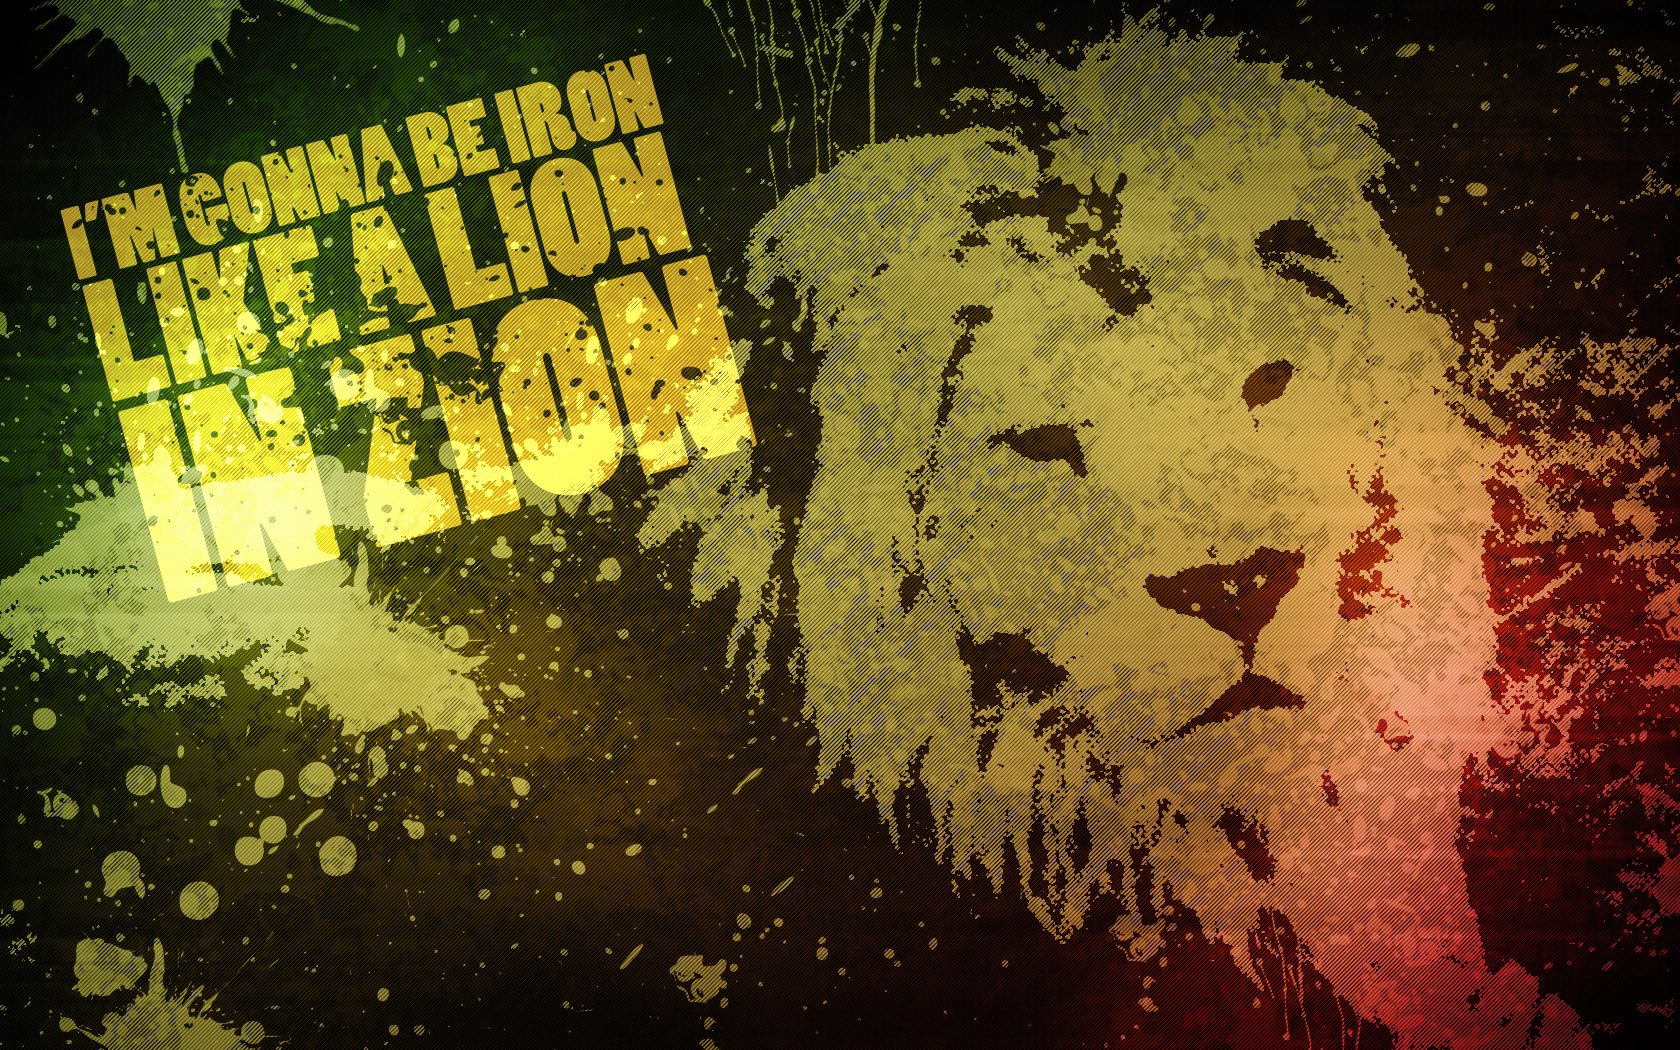 Iron Lion Zion by djog on DeviantArt